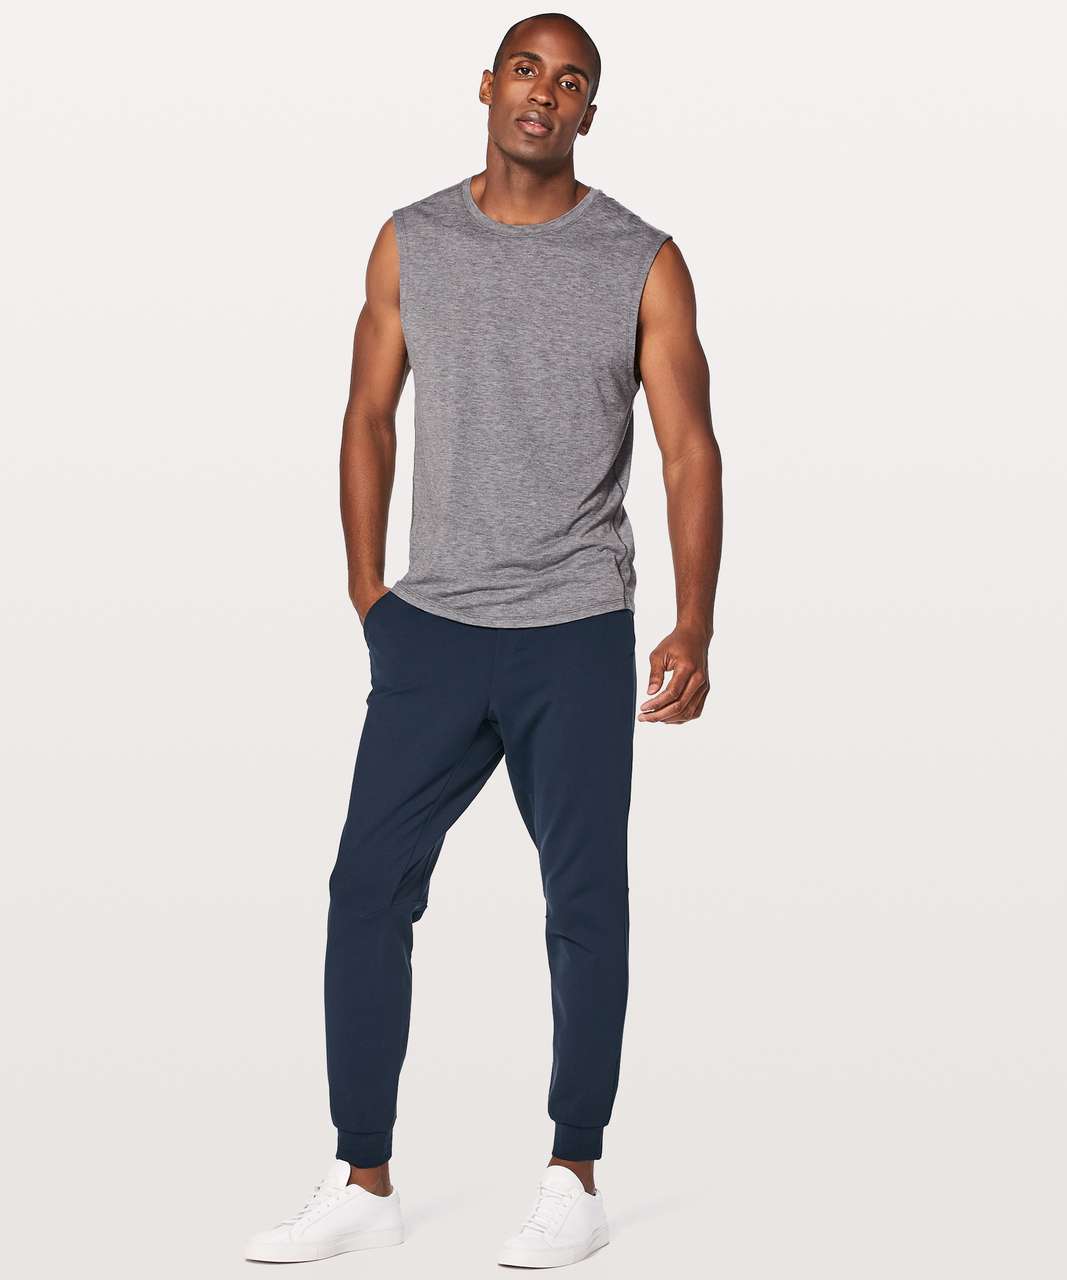 Lululemon Intent Jogger Sweatpants Pants 30”size M Men's